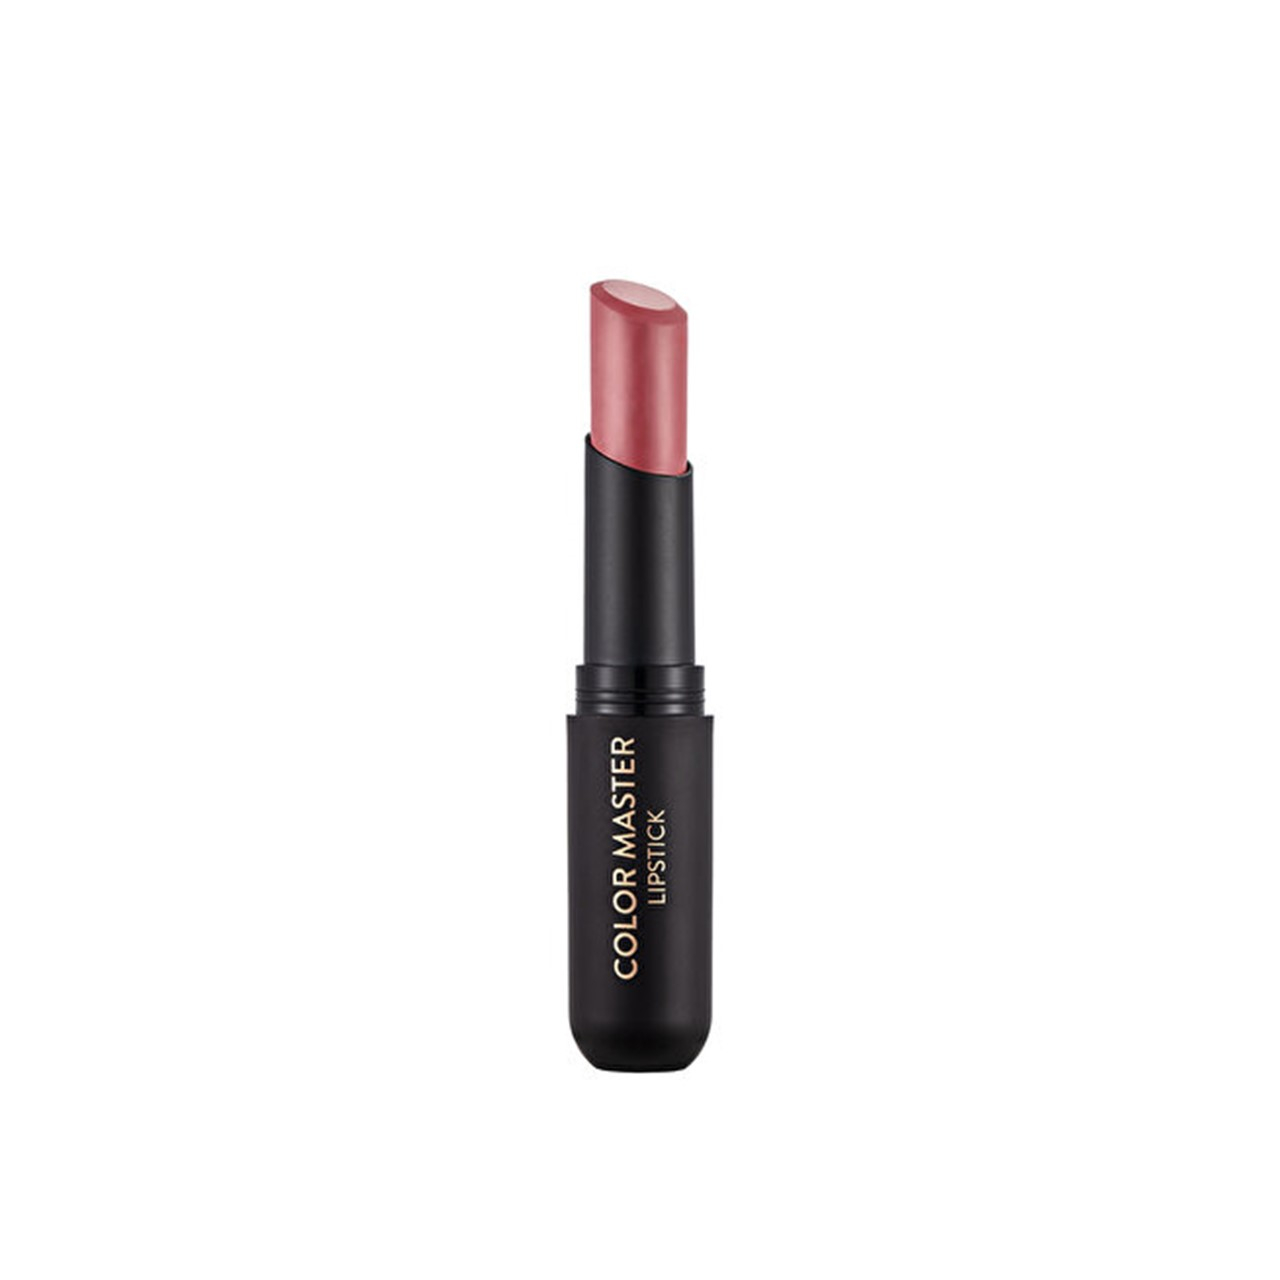 Flormar Color Master Lipstick 04 Tropic Breeze 3g (0.11oz)